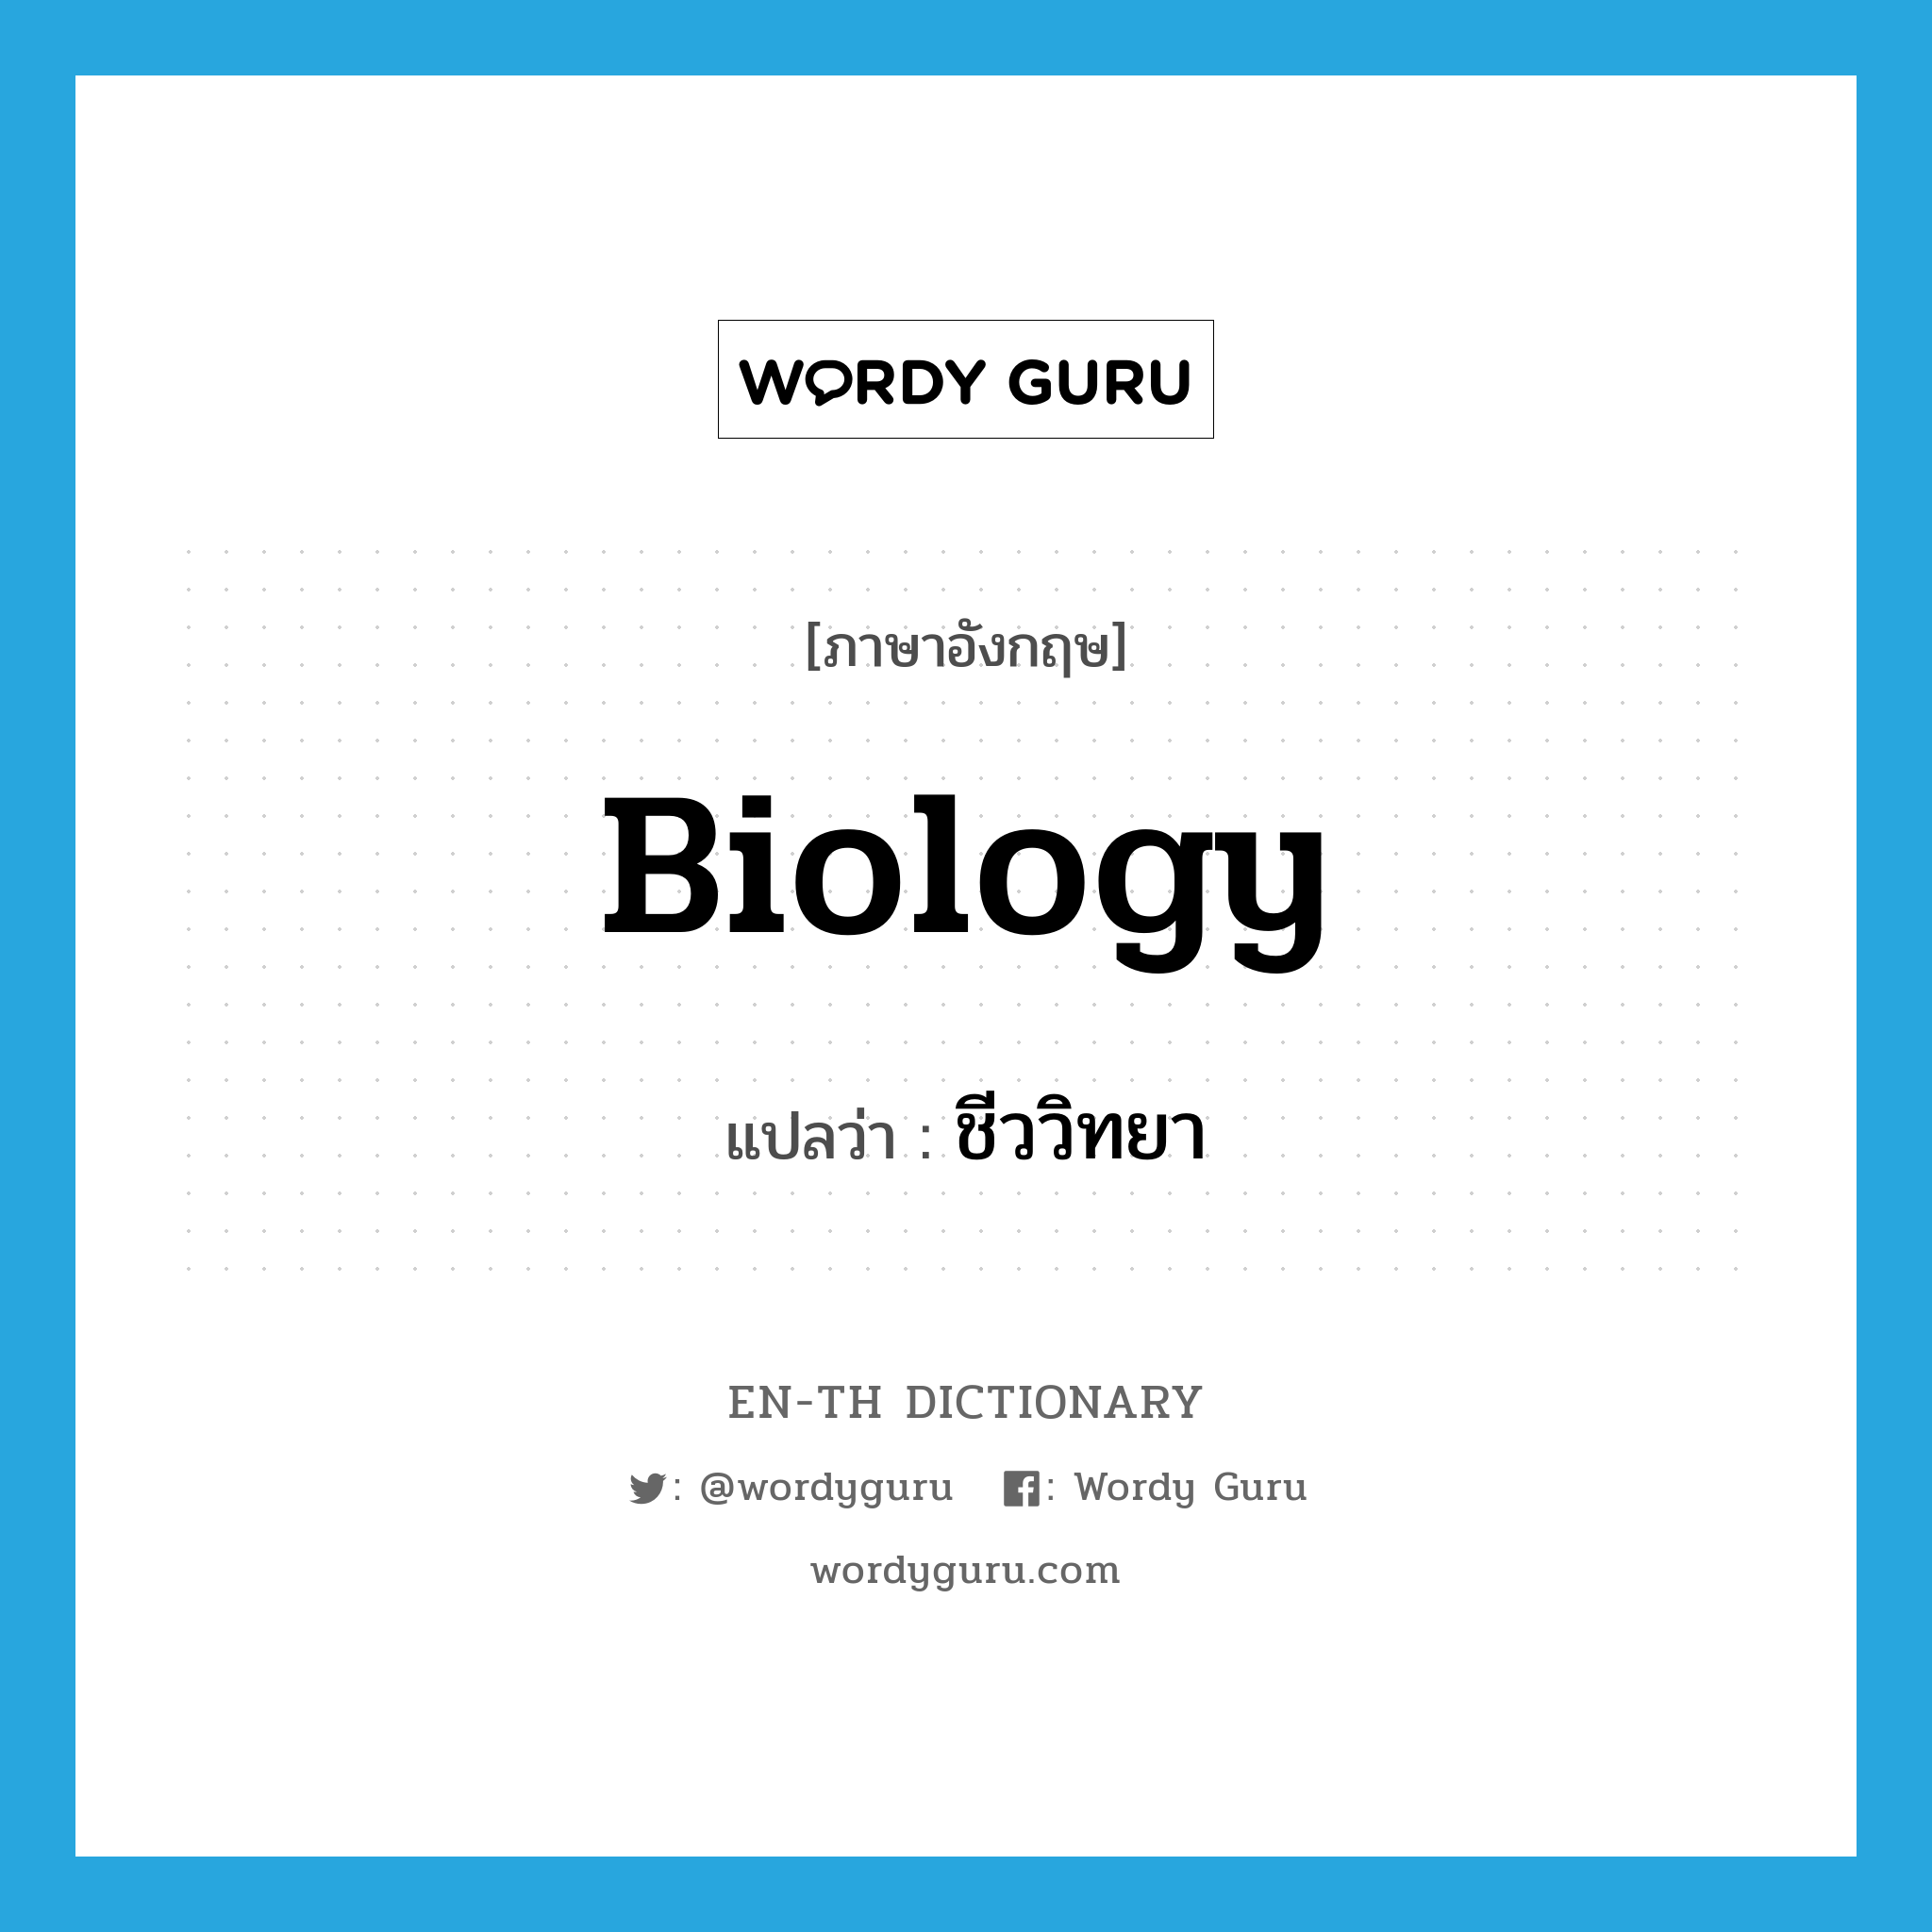 biology แปลว่า?, คำศัพท์ภาษาอังกฤษ biology แปลว่า ชีววิทยา ประเภท N หมวด N